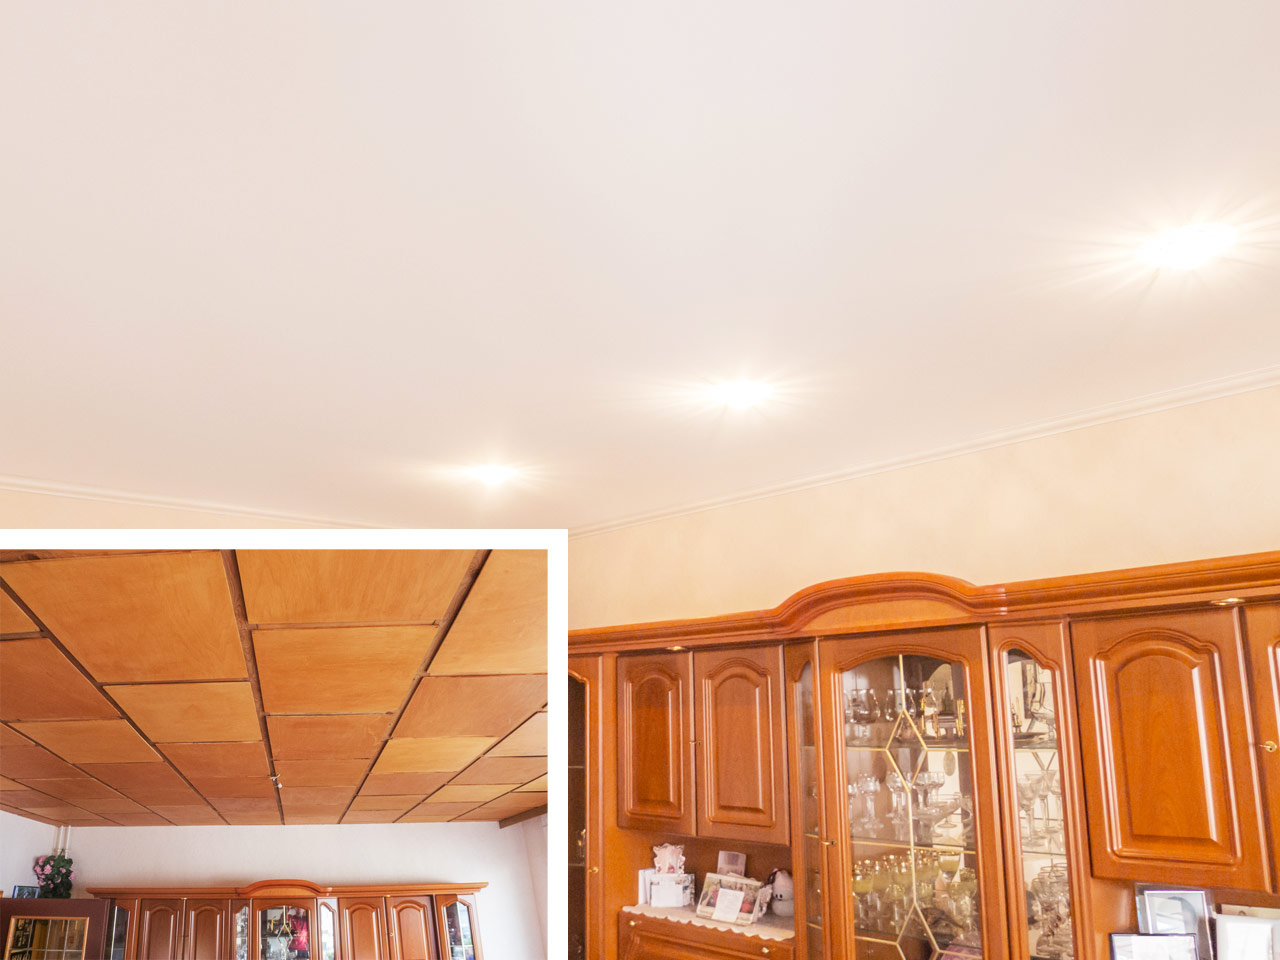 Eine renovierte Holzpaneeldecke, die durch eine moderne Spanndecke erneuert wurde und dem Raum ein elegantes und zeitgemäßes Erscheinungsbild verleiht.